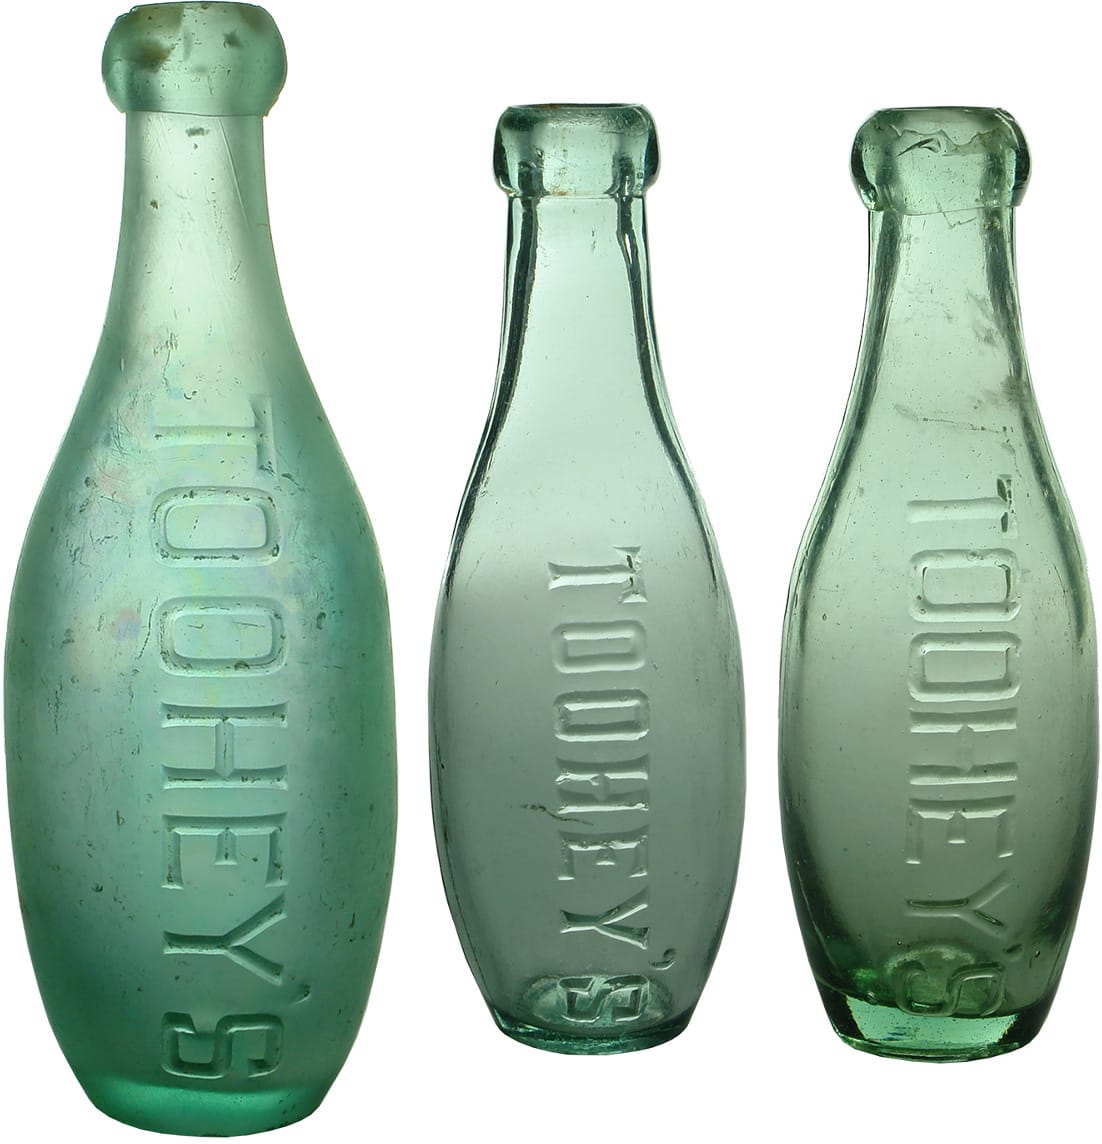 Tooheys Antique Skittle Bottles